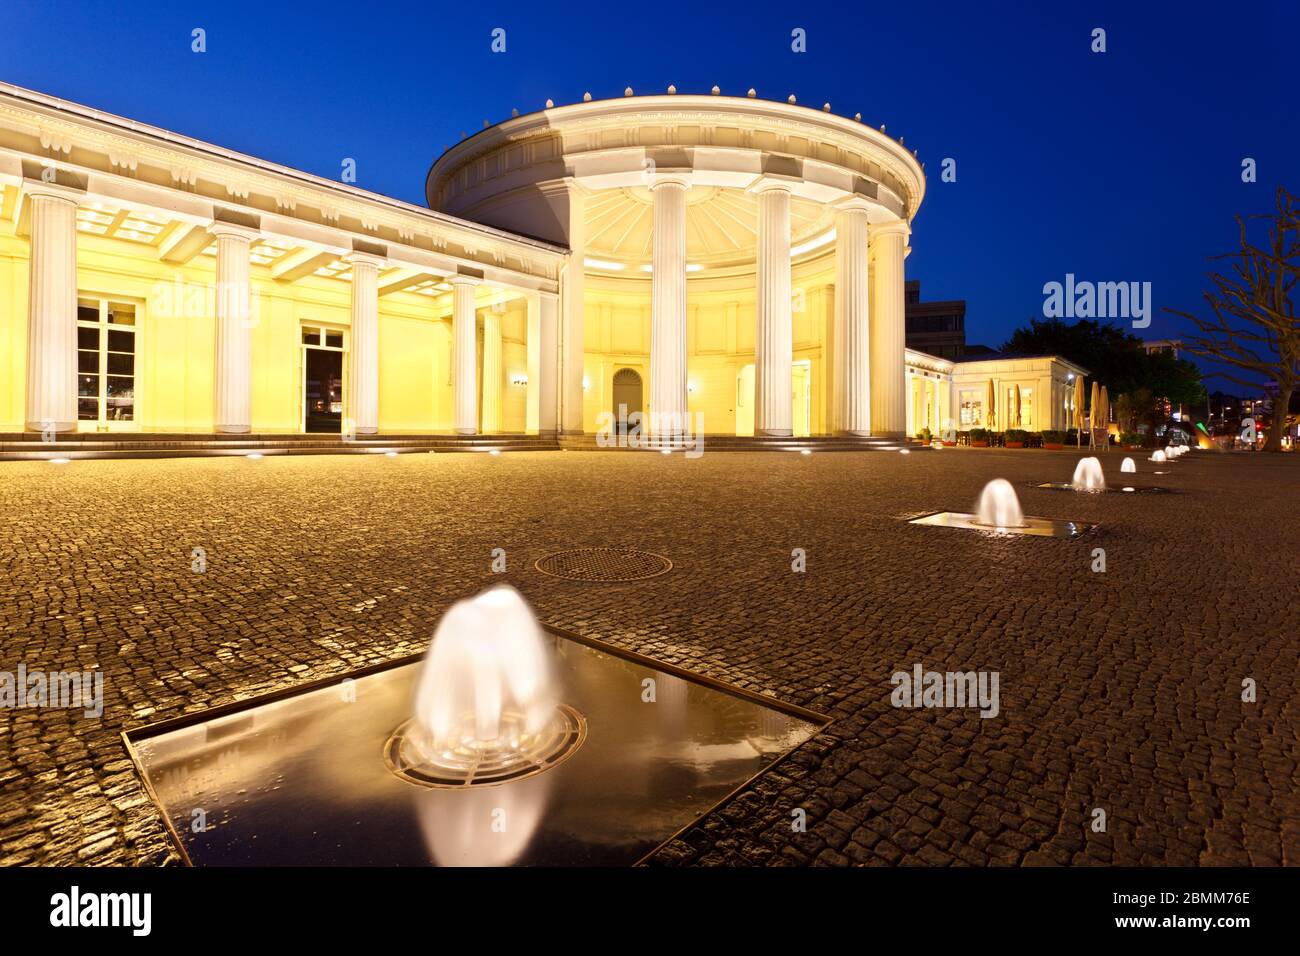 L'Elisenbrunnen célèbre à Aix-la-Chapelle, Allemagne. Nuit illuminée de ciel bleu et quelques fontaines dans l'avant-plan. Banque D'Images